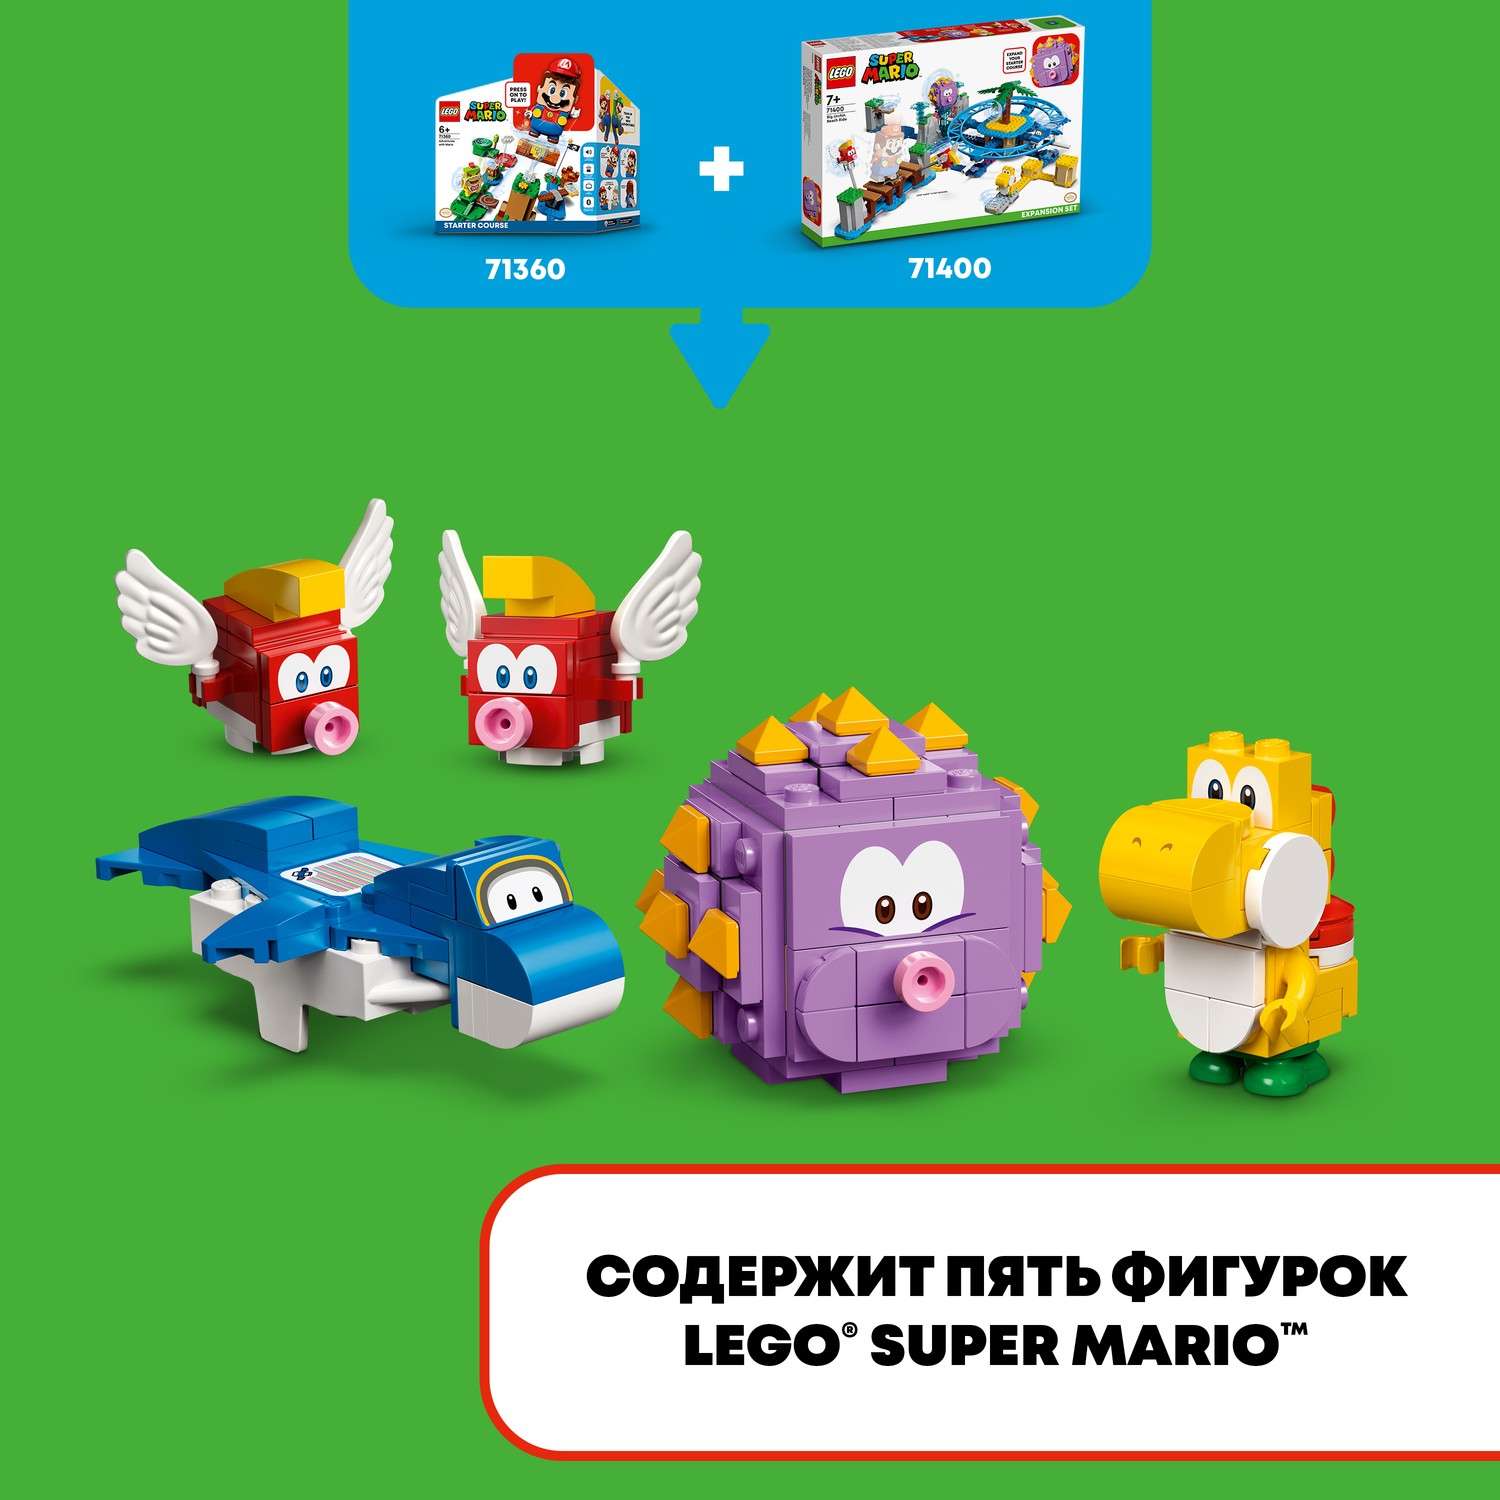 Конструктор LEGO Super Mario tbd LEAF 5 2022 71400 - фото 7